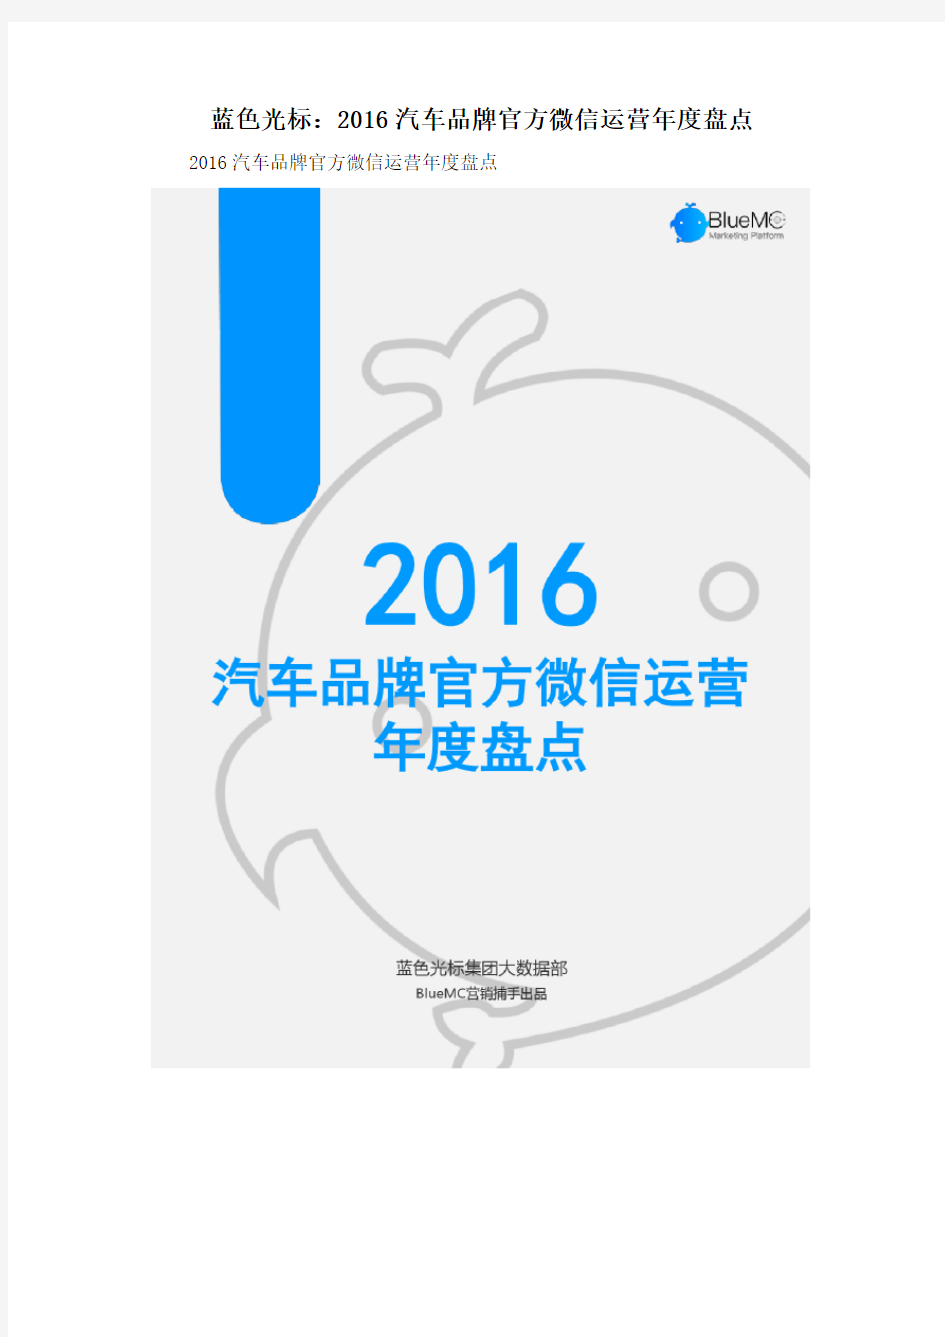 蓝色光标：2016汽车品牌官方微信运营年度盘点